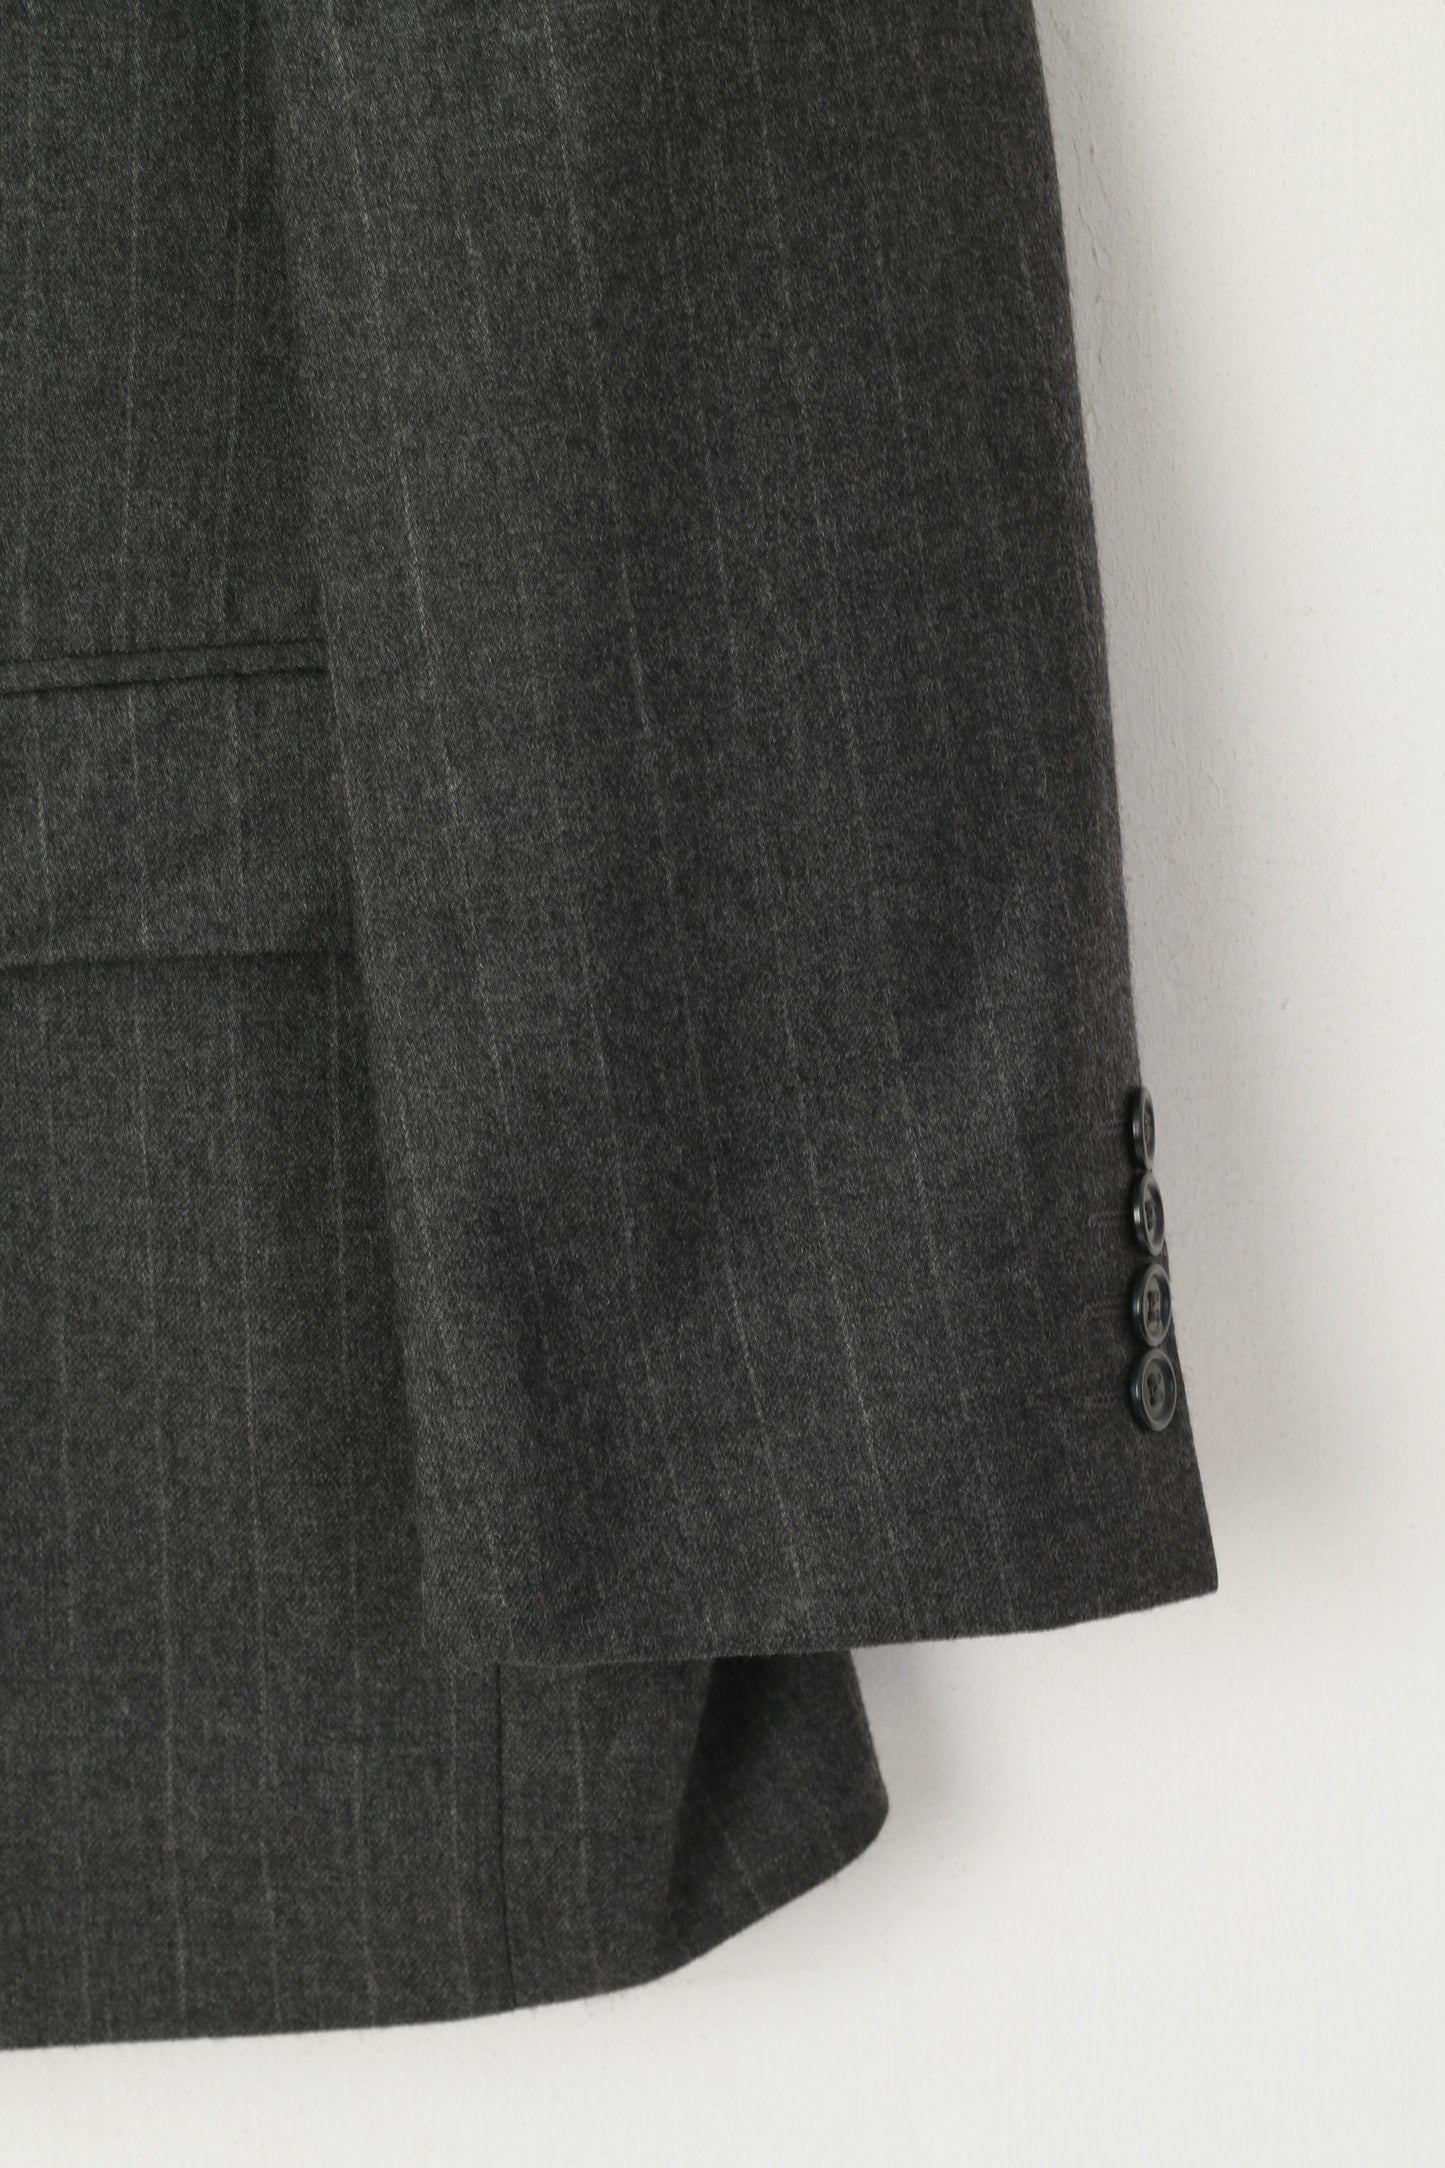 Pierre Cardin Men 50 40 Blazer Gray Striped Wool Single Breasted Jacket